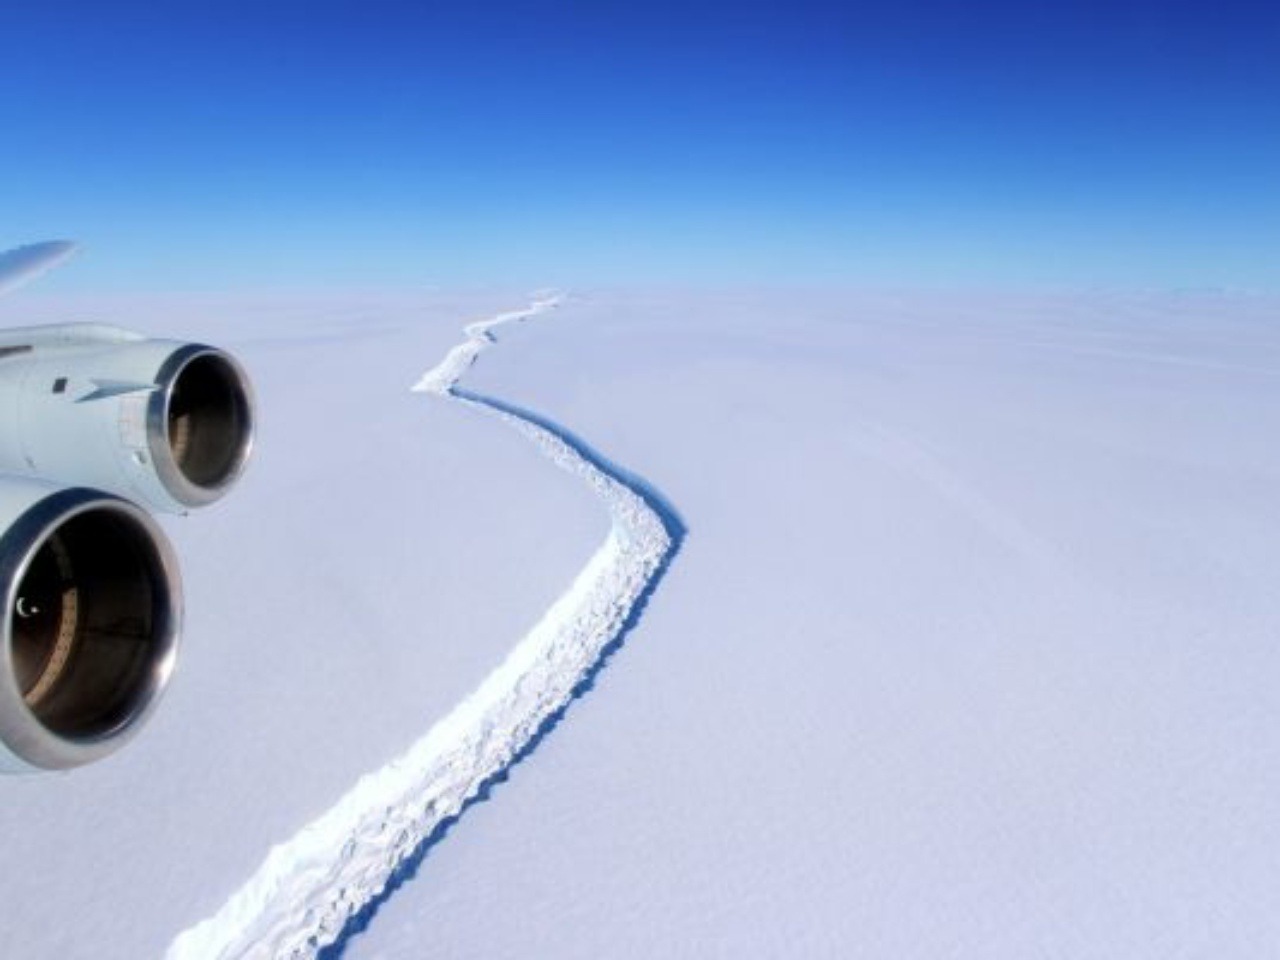 Z lietadla vidno trhlinu v ľade